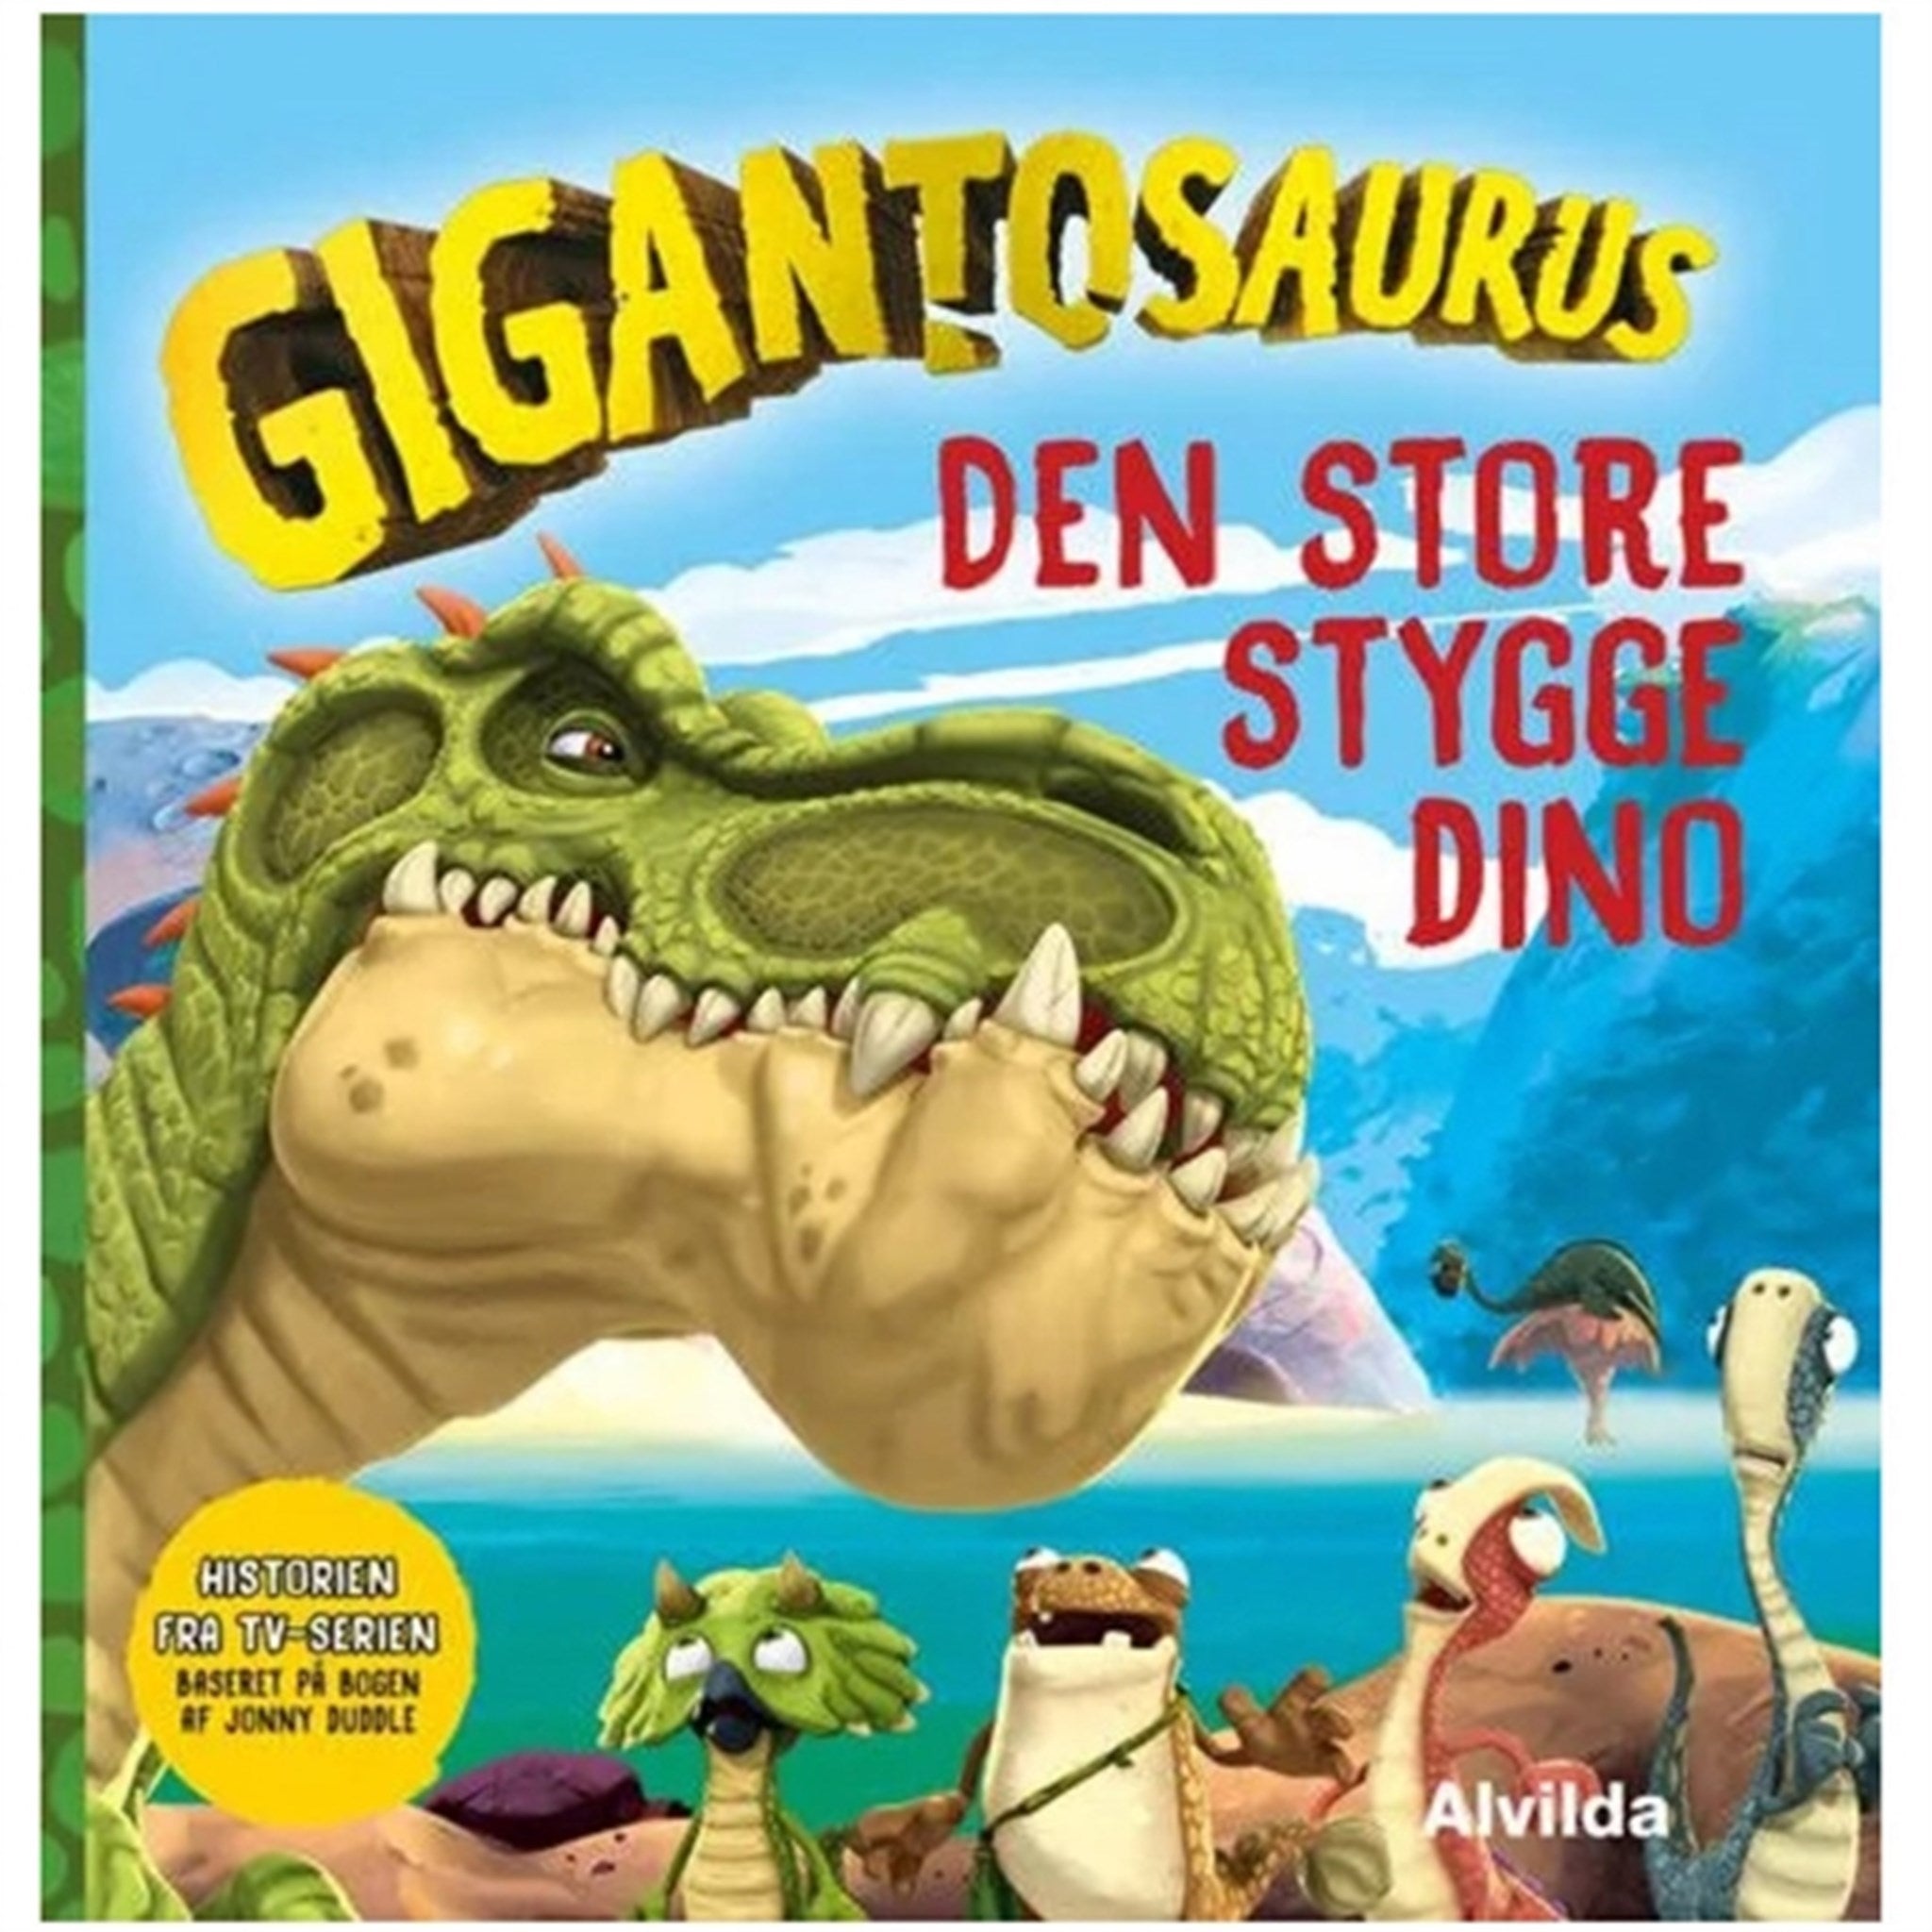 Alvilda Gigantosaurus - Dem Store Stygge Dino